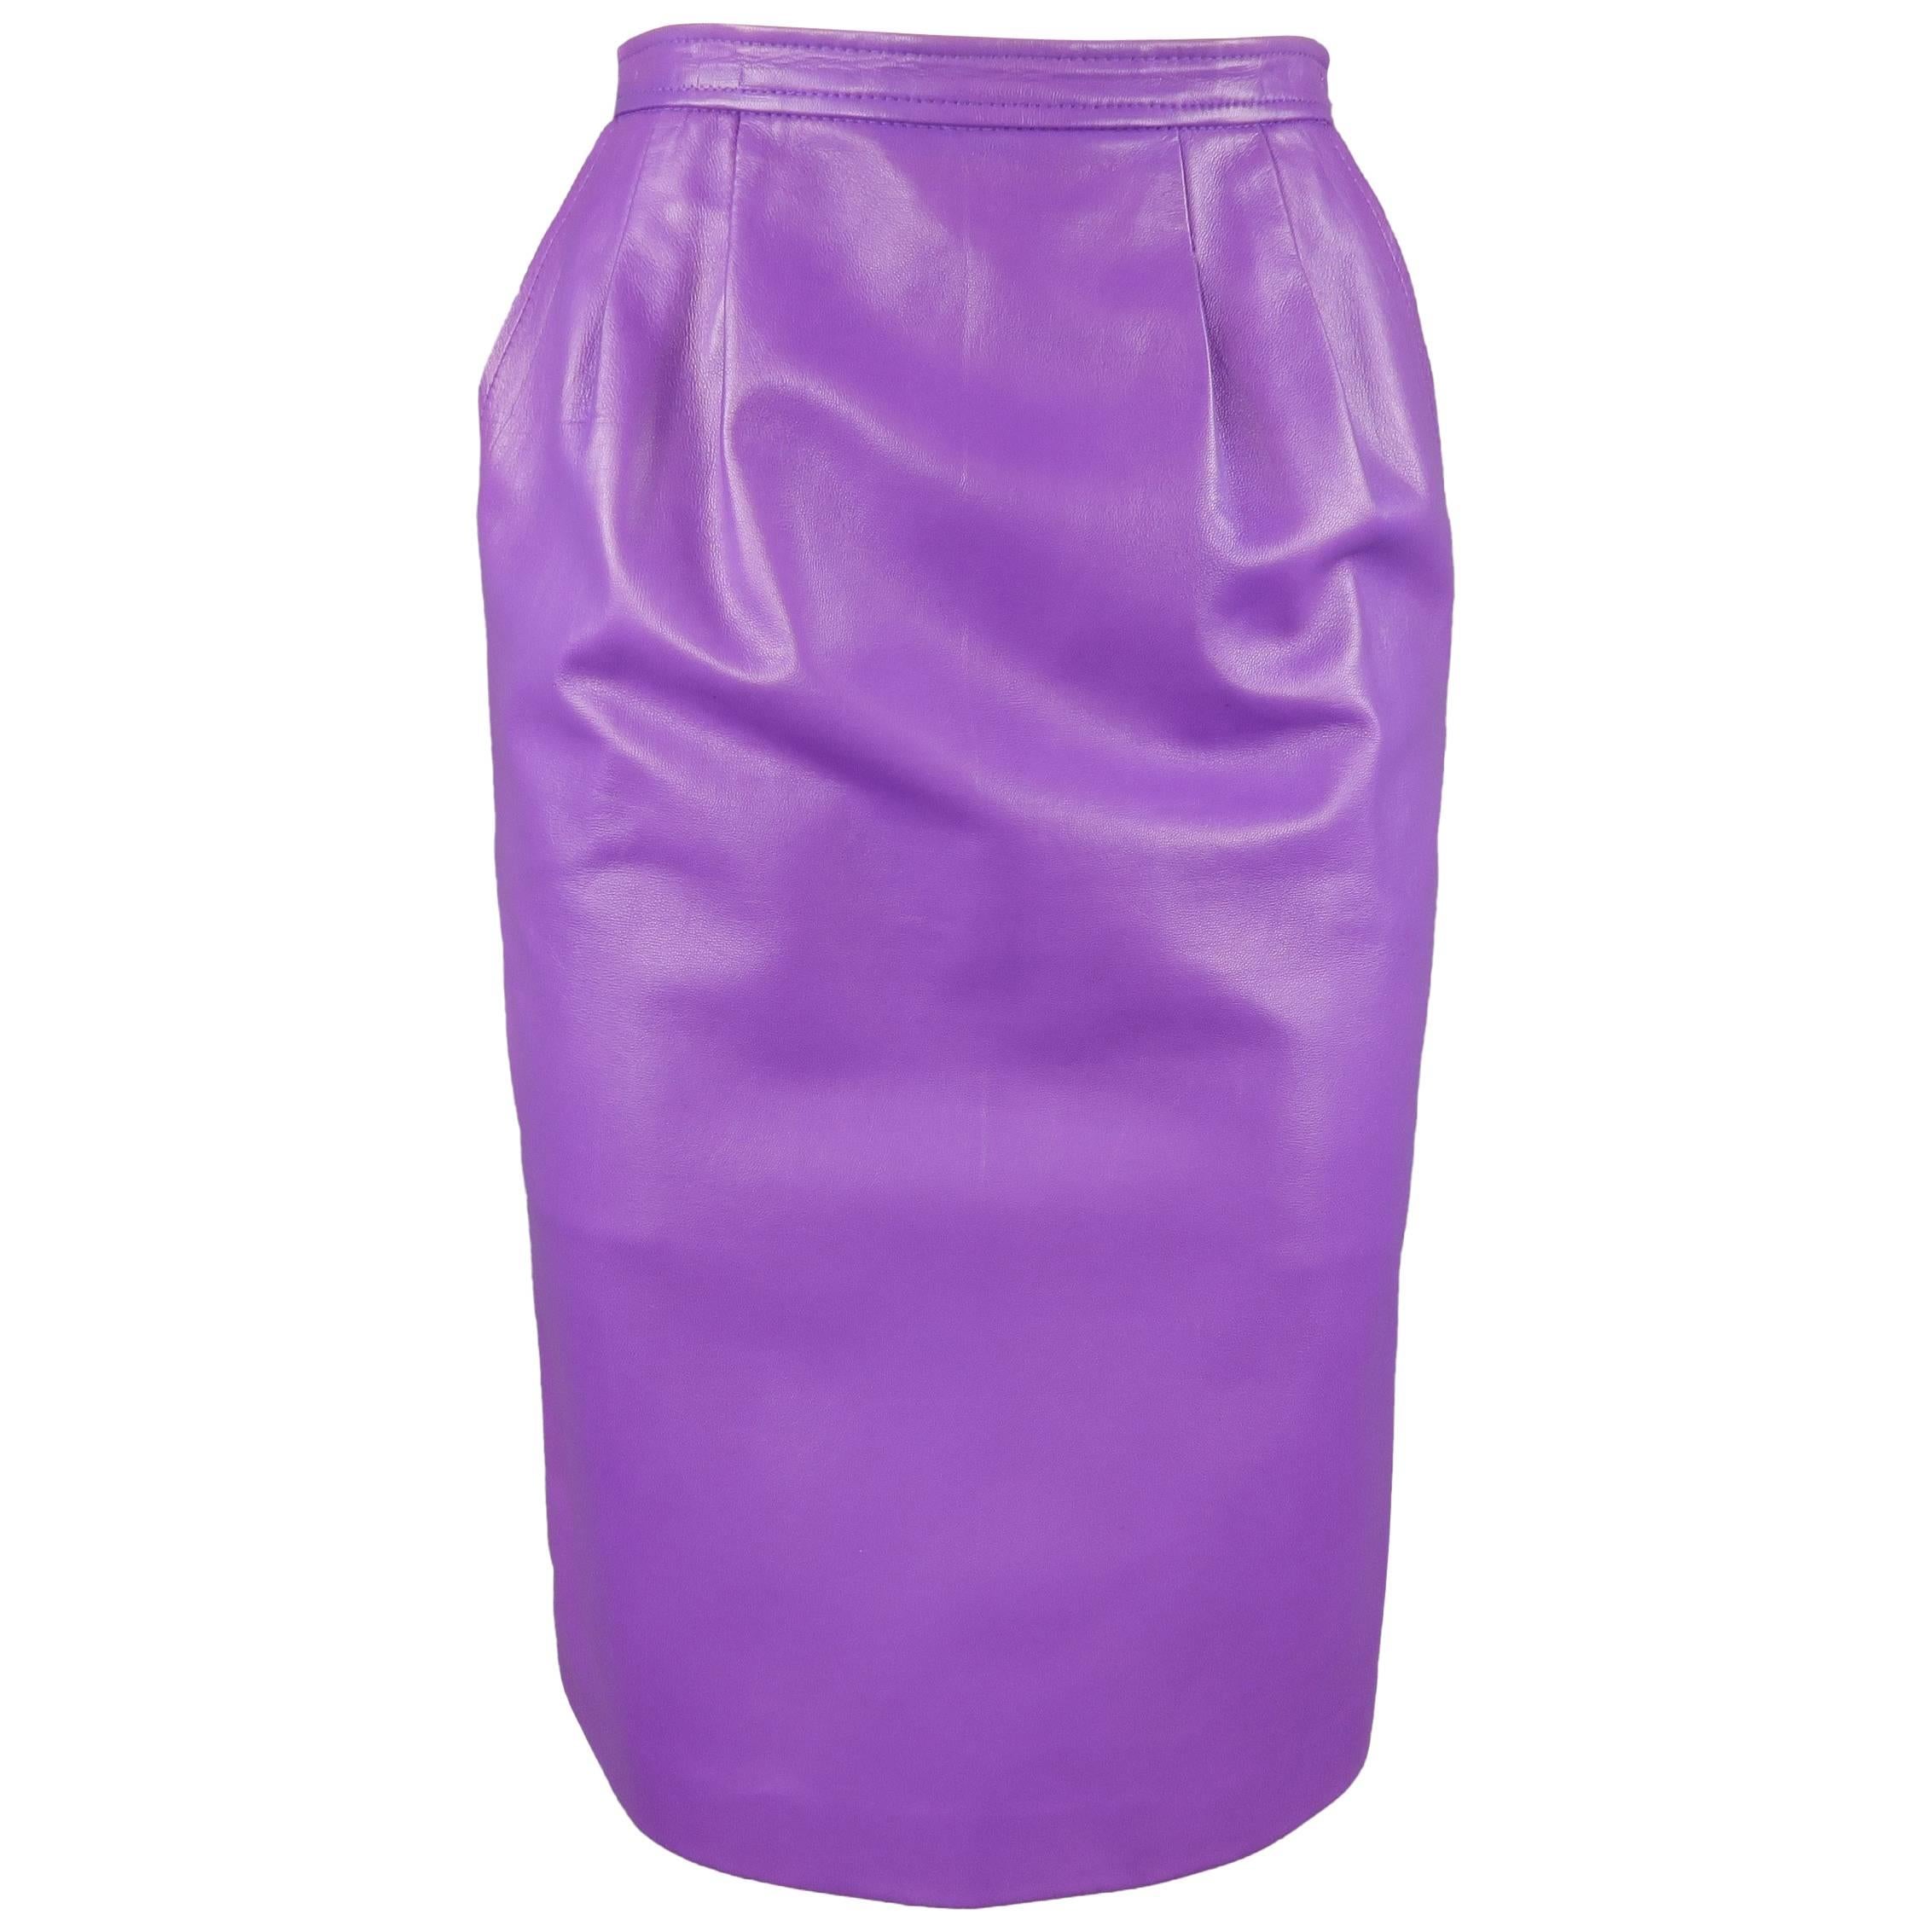 YVES SAINT LAURENT Rive Gauche Size 4 Purple Leather Pencil Skirt